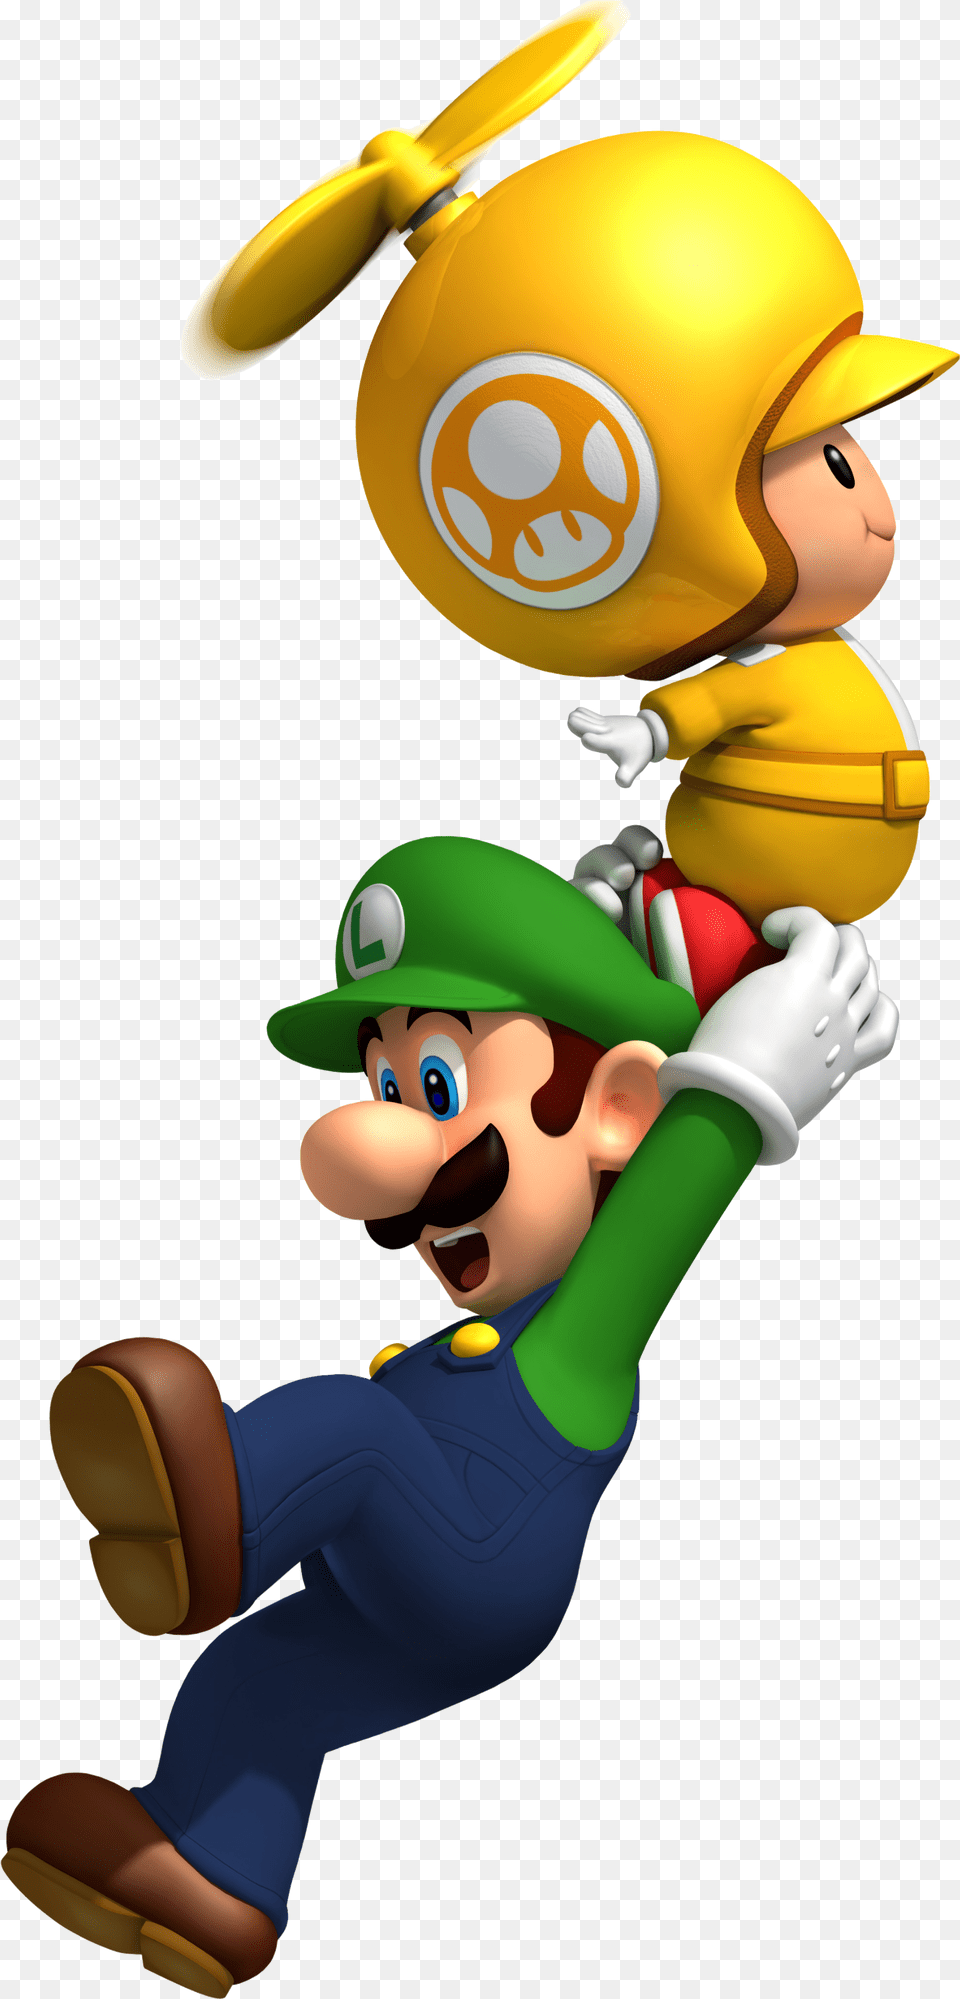 New Super Mario Bros Super Mario Bros Wii, Baby, Person, Game, Super Mario Png